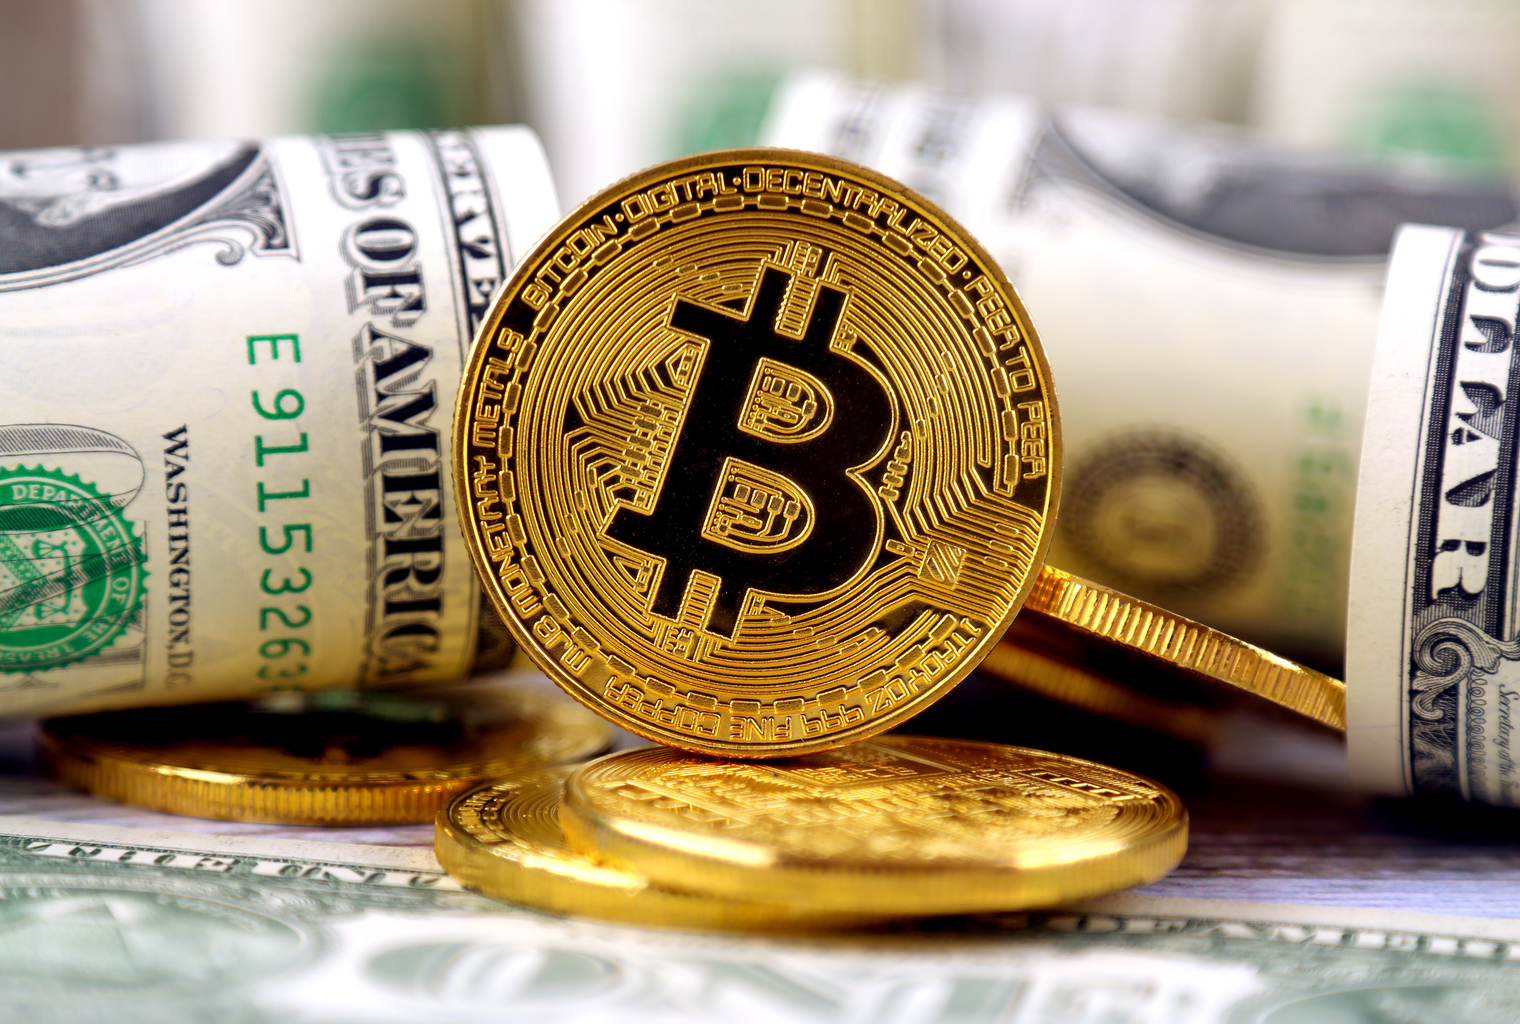  Historia de Bitcoin Parte 20: BTC alcanza $ 1 